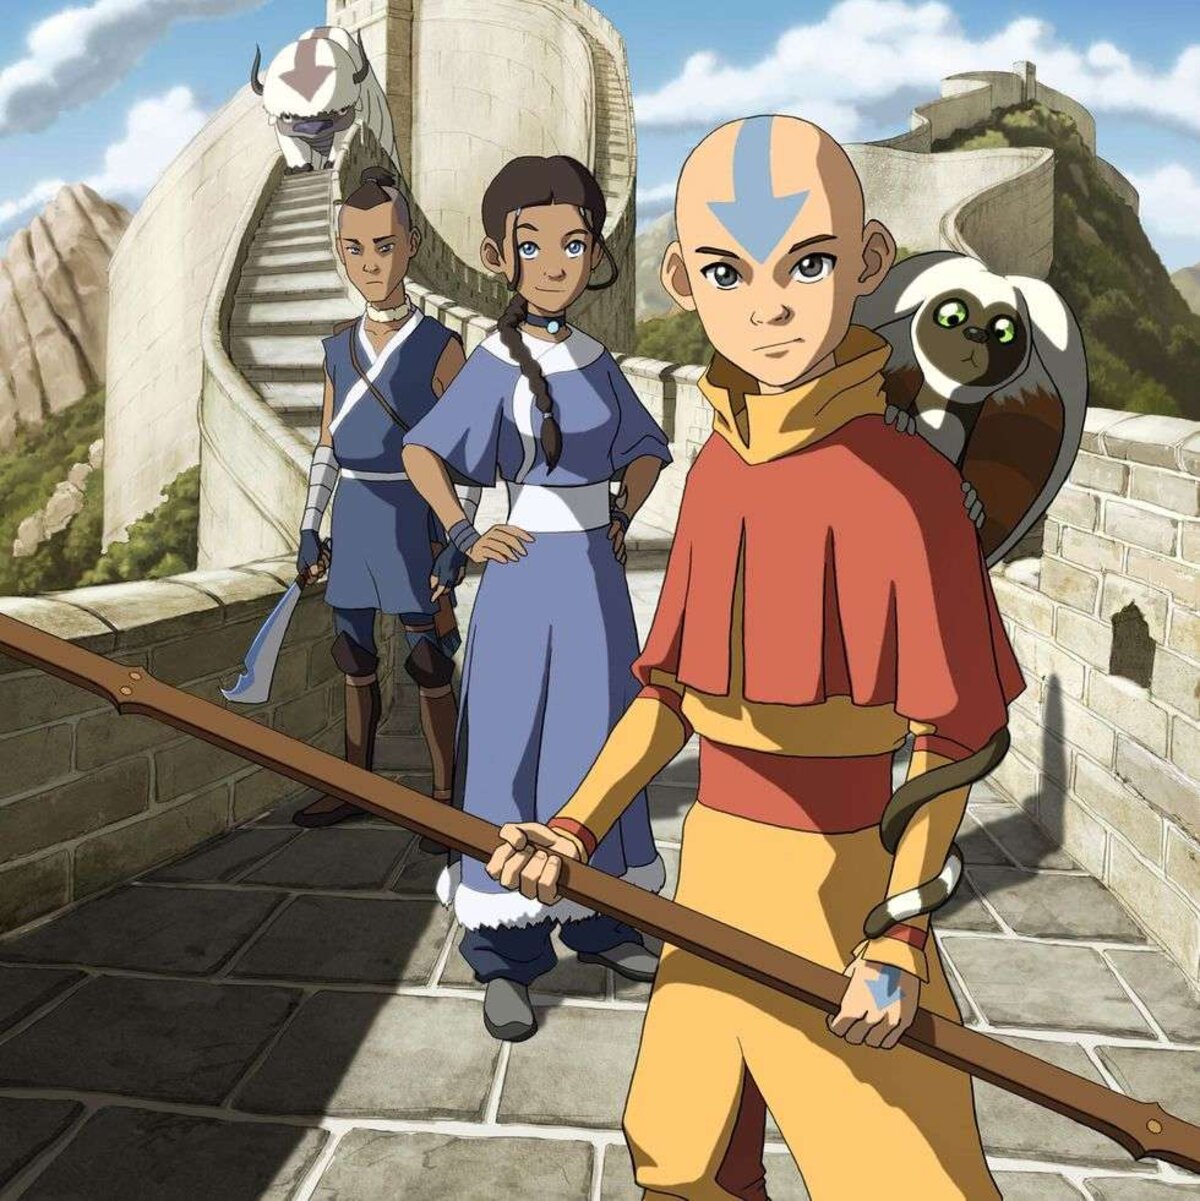 Avatar: The Last Airbender - di sản anime tại Comic là một trong những bộ phim anime đình đám nhất trong lịch sử. Với những giây phút kỳ diệu và những sự cố gắng không ngừng của nhân vật chính, đây là một bộ phim đáng xem cho những người yêu thích anime và truyện tranh.